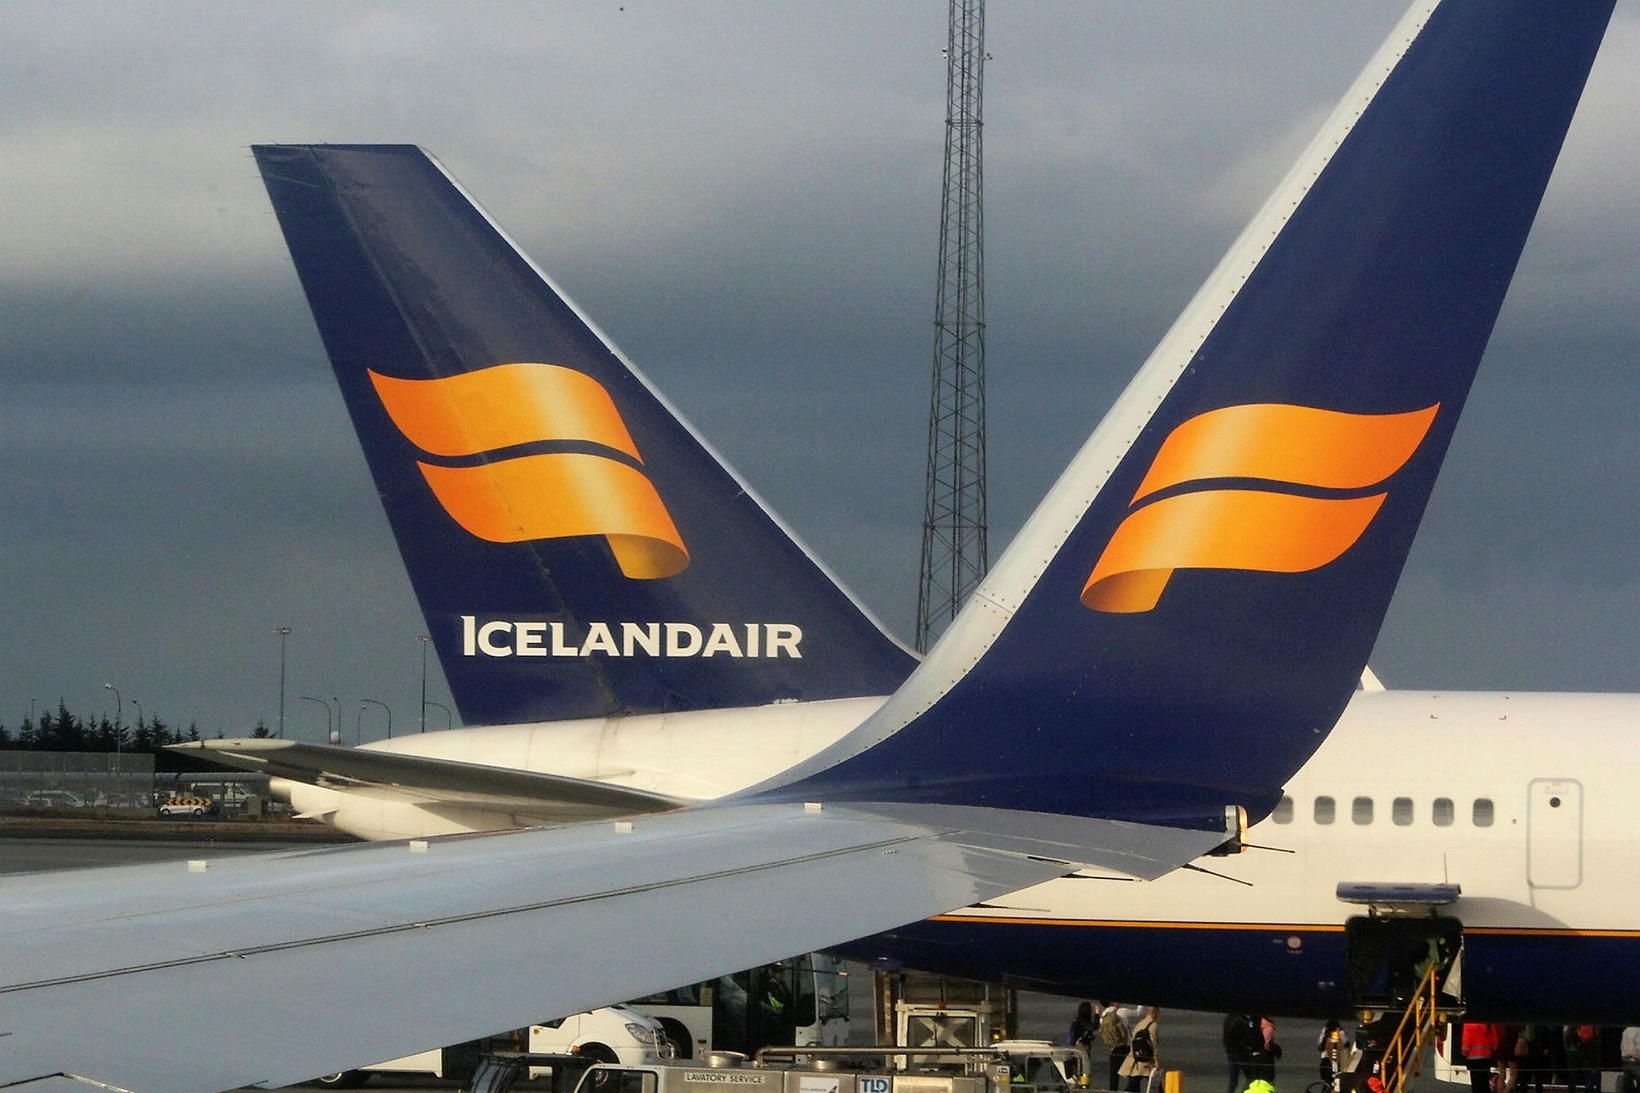 Farþegum Icelandair fjölgar umtalsvert.